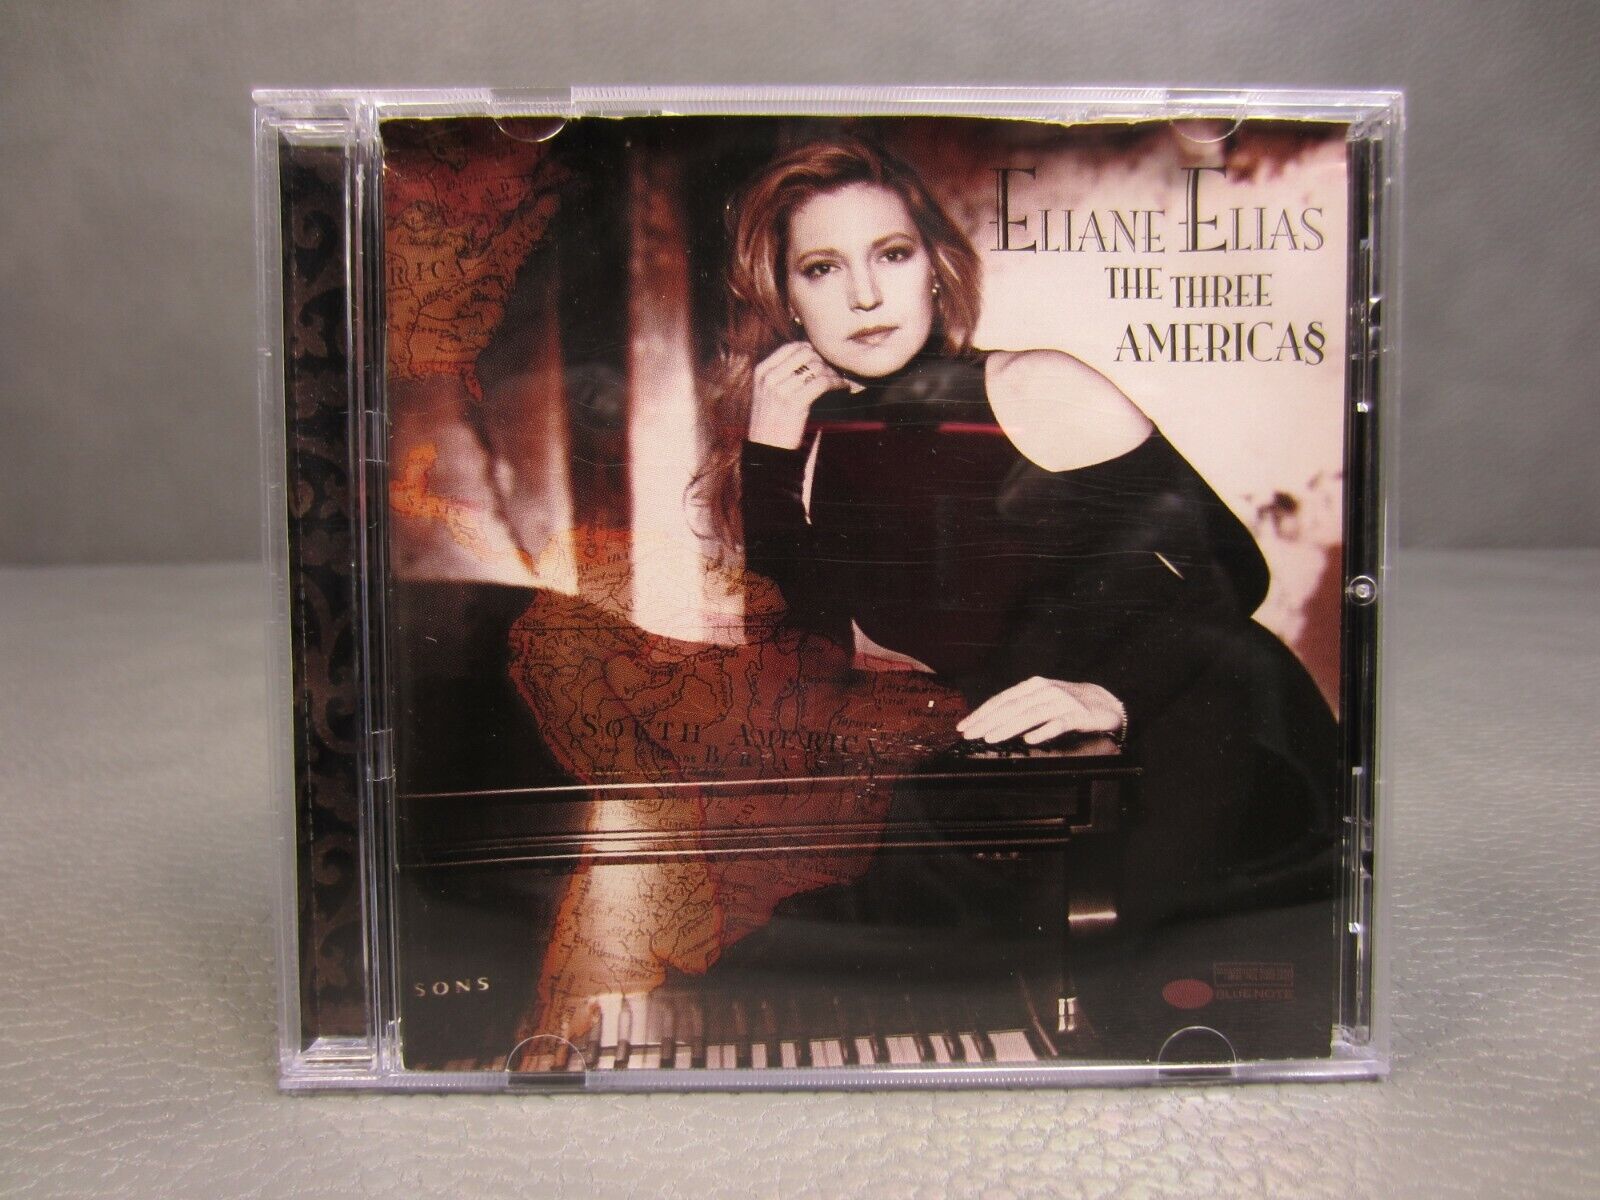 Eliane elias the three americas cd